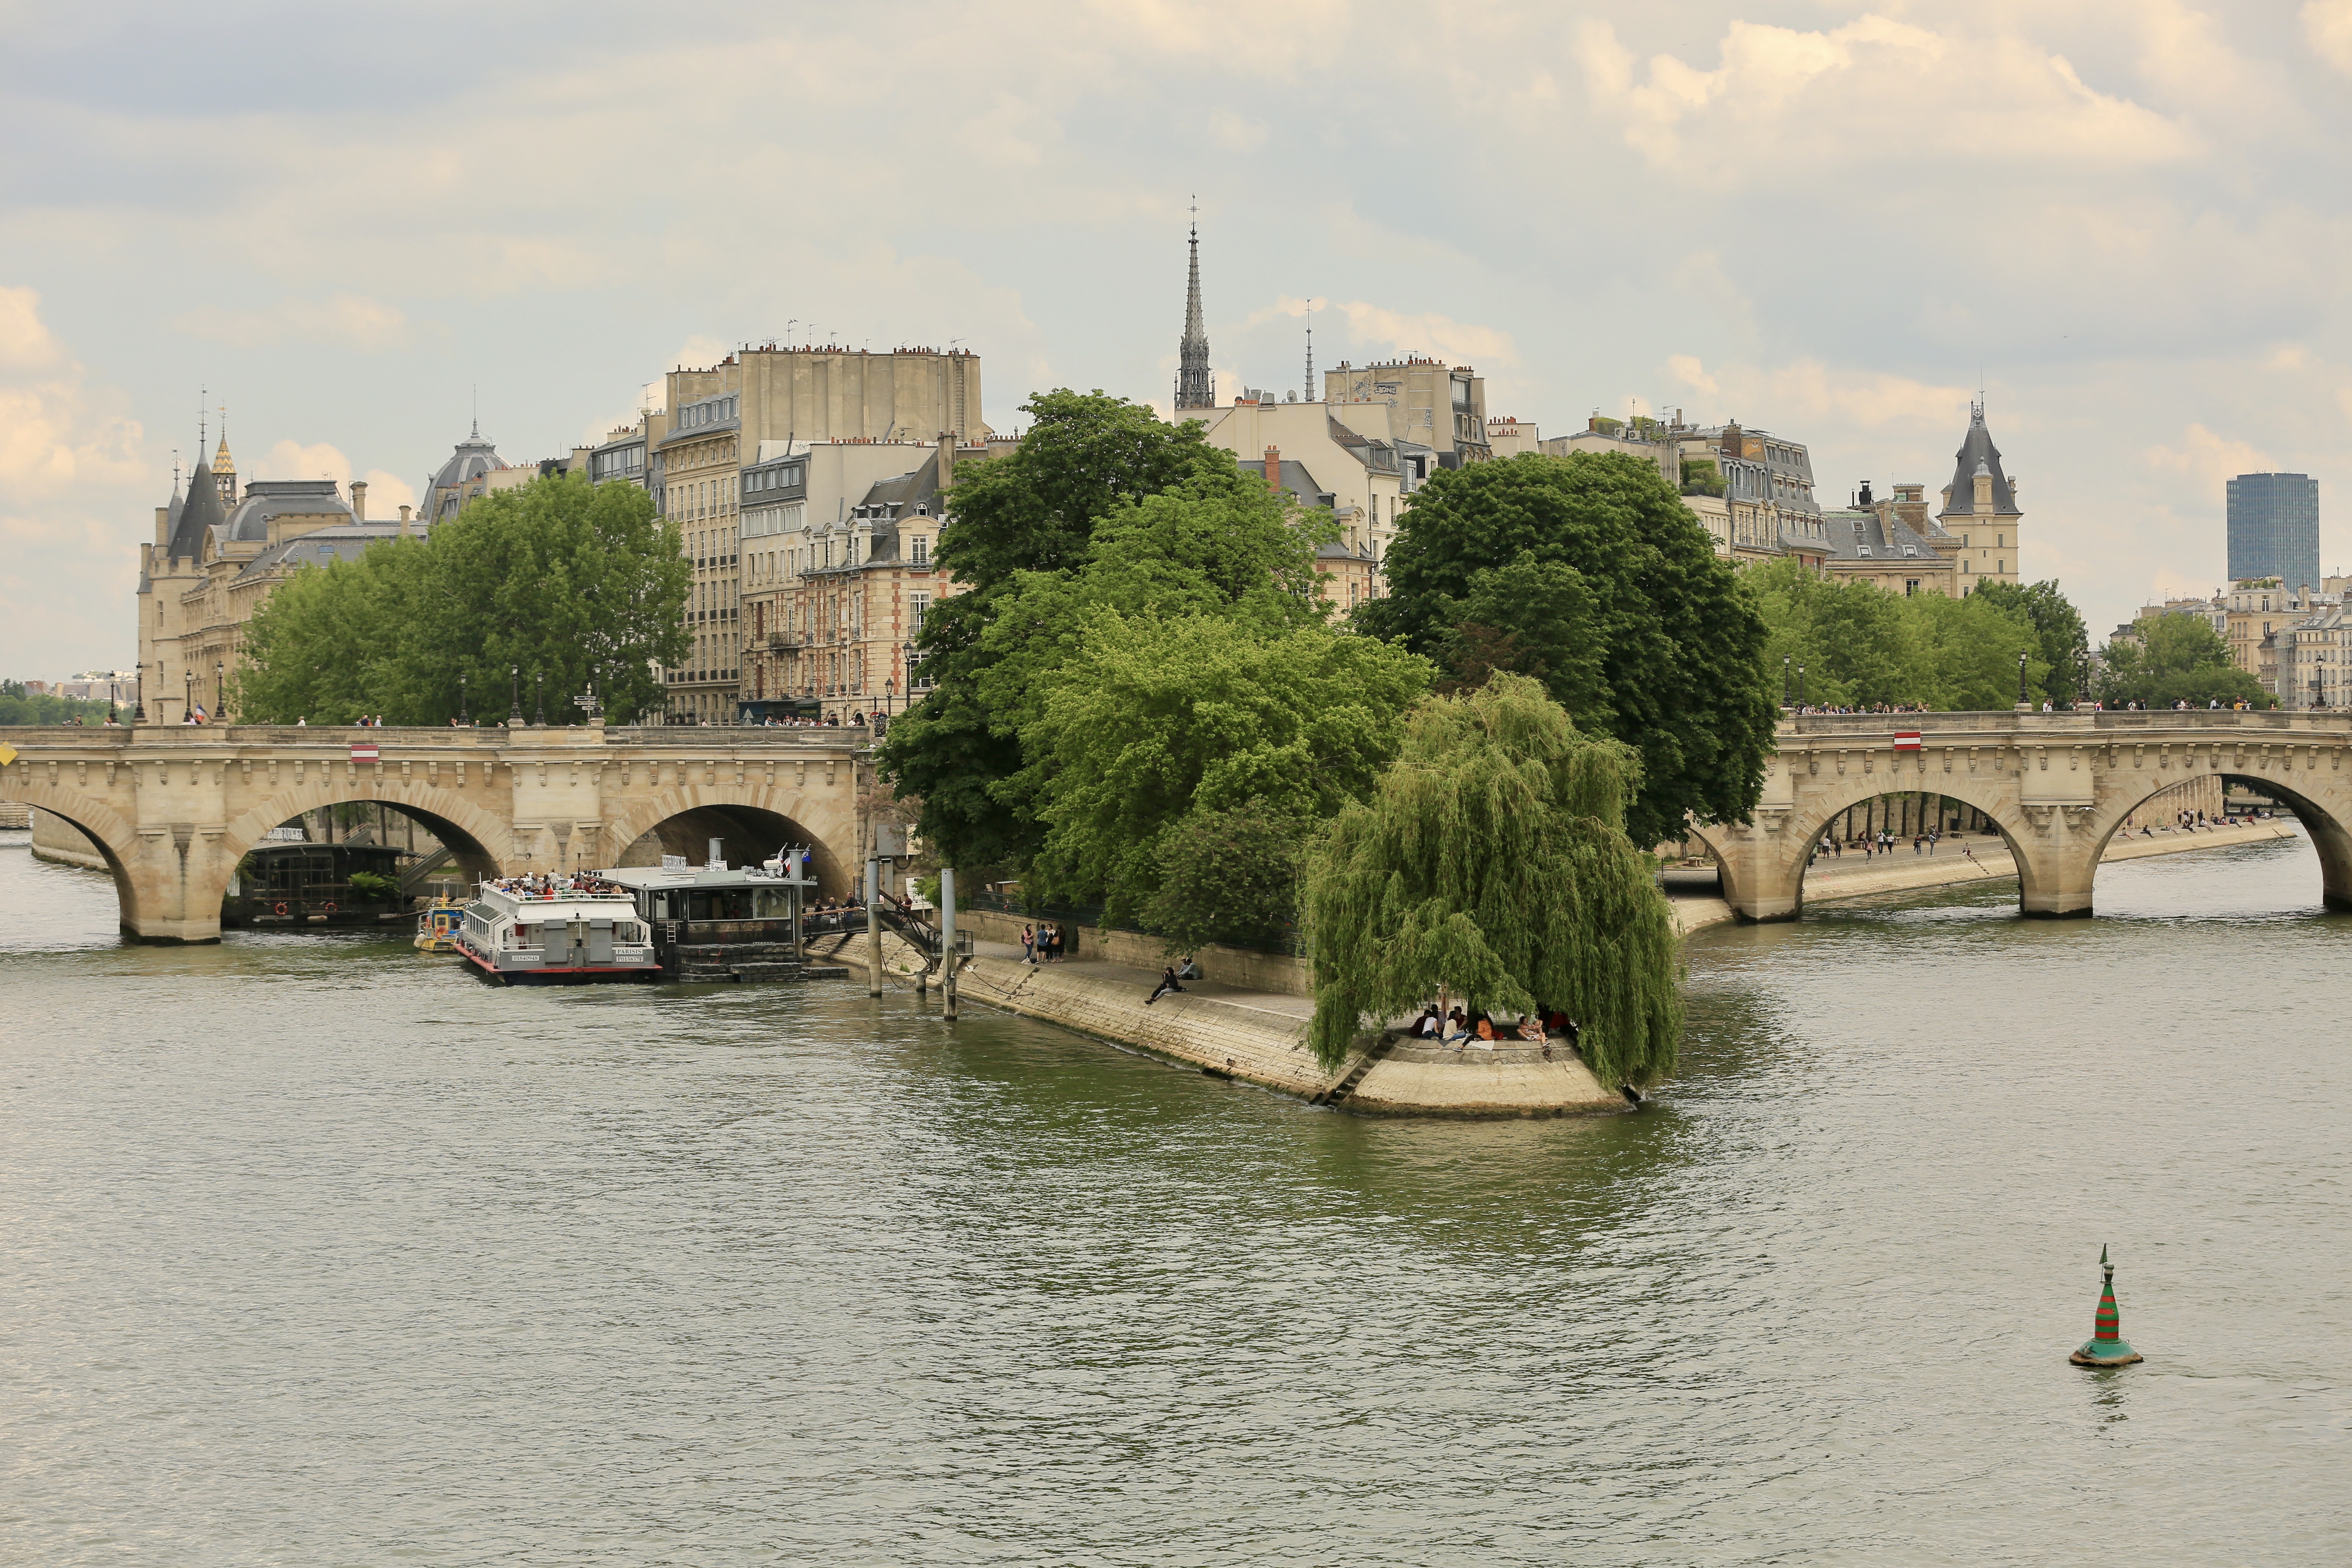 Le seine. Сена (река) реки Франции. Река сена в Париже. Seine река во Франции. Достопримечательности Франции. Река сена.